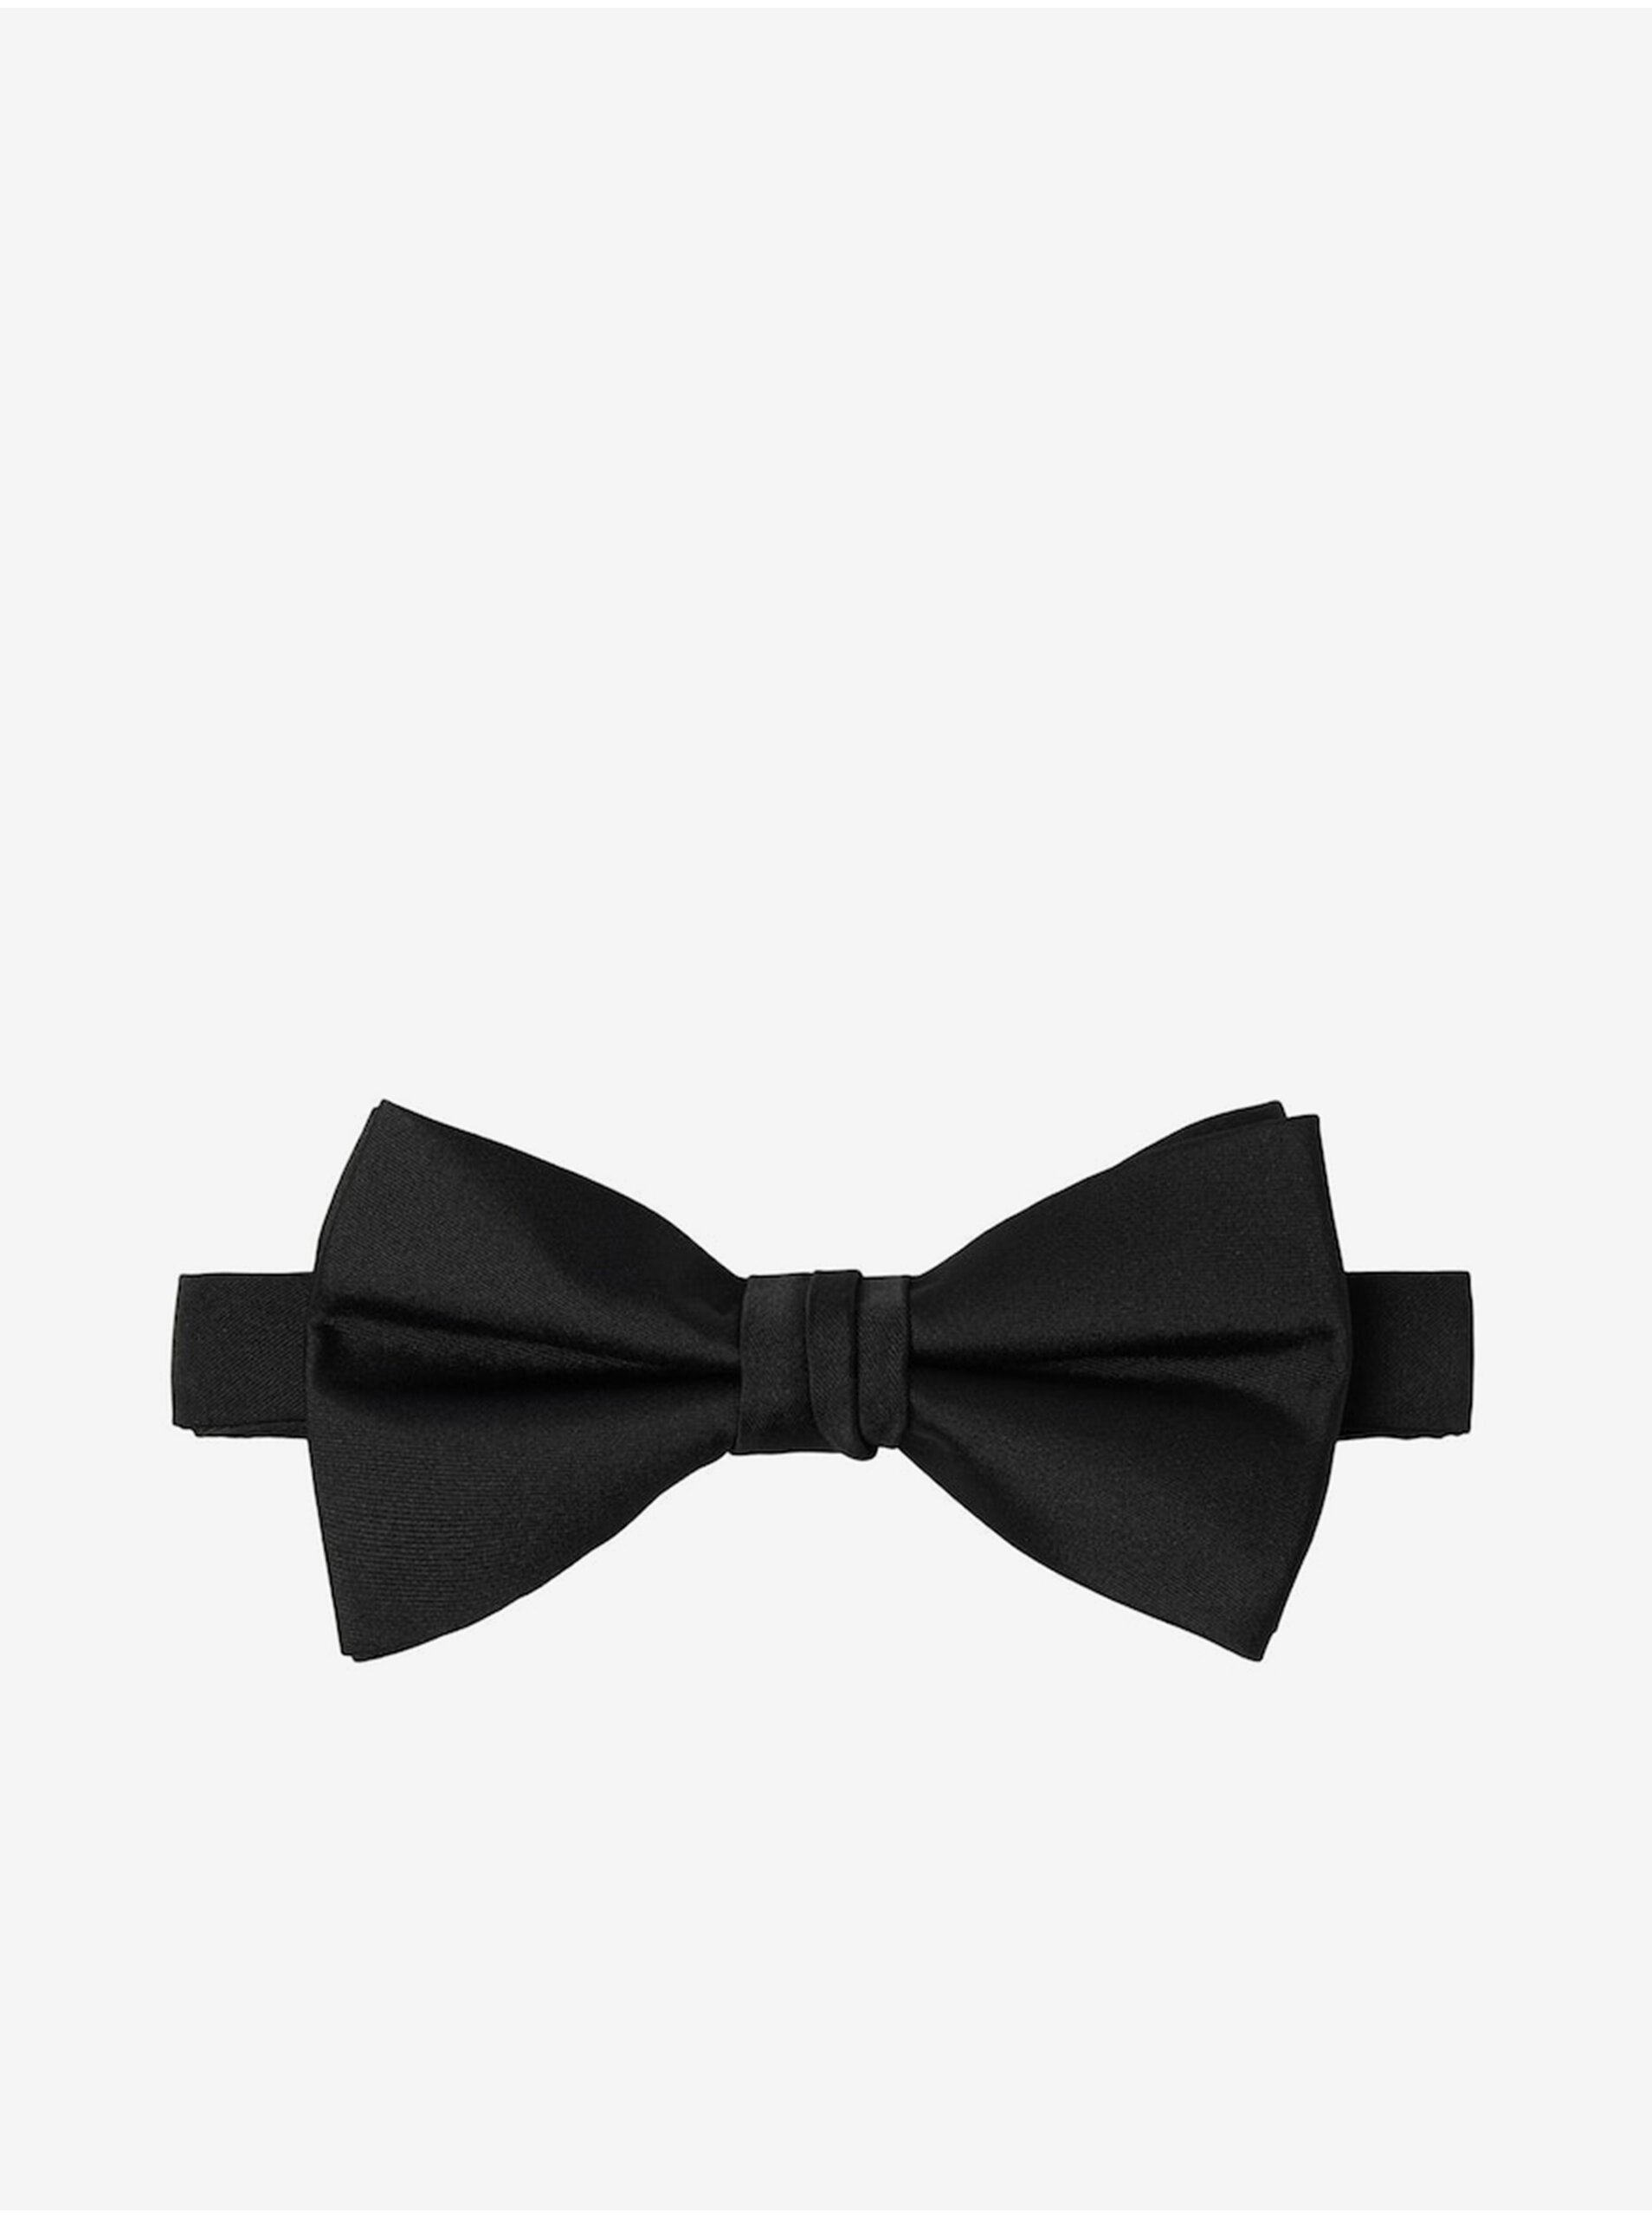 Black bow tie Jack & Jones Solid - Men